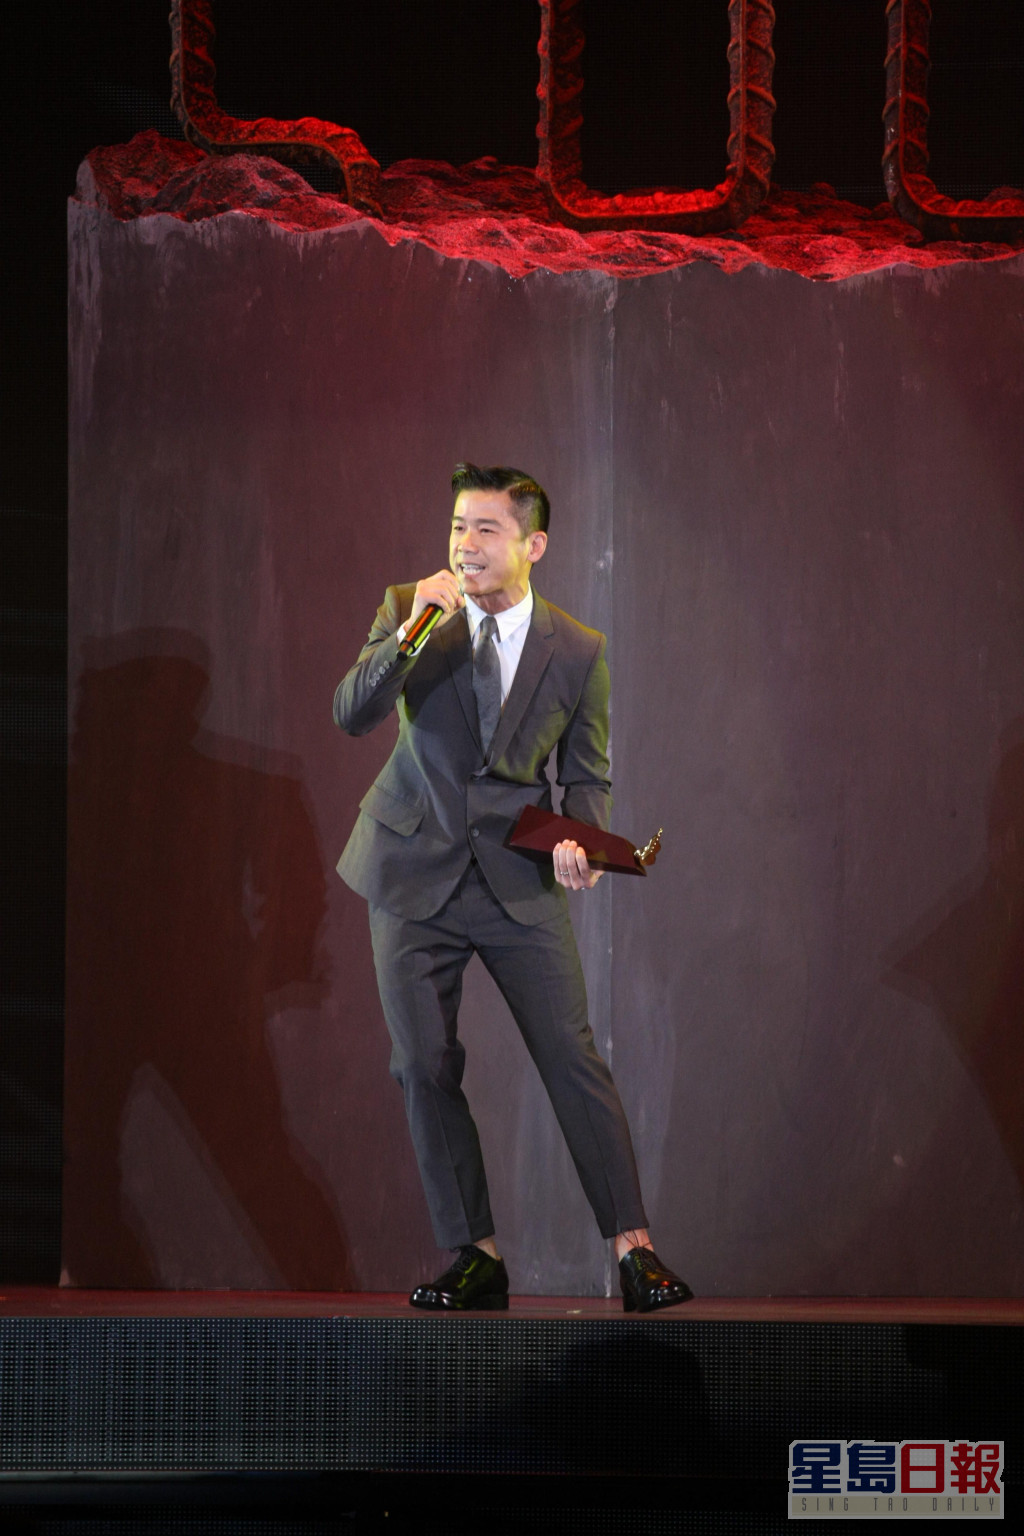 林海峰在「叱咤乐坛流行榜颁奖典礼」上多度夺奖。